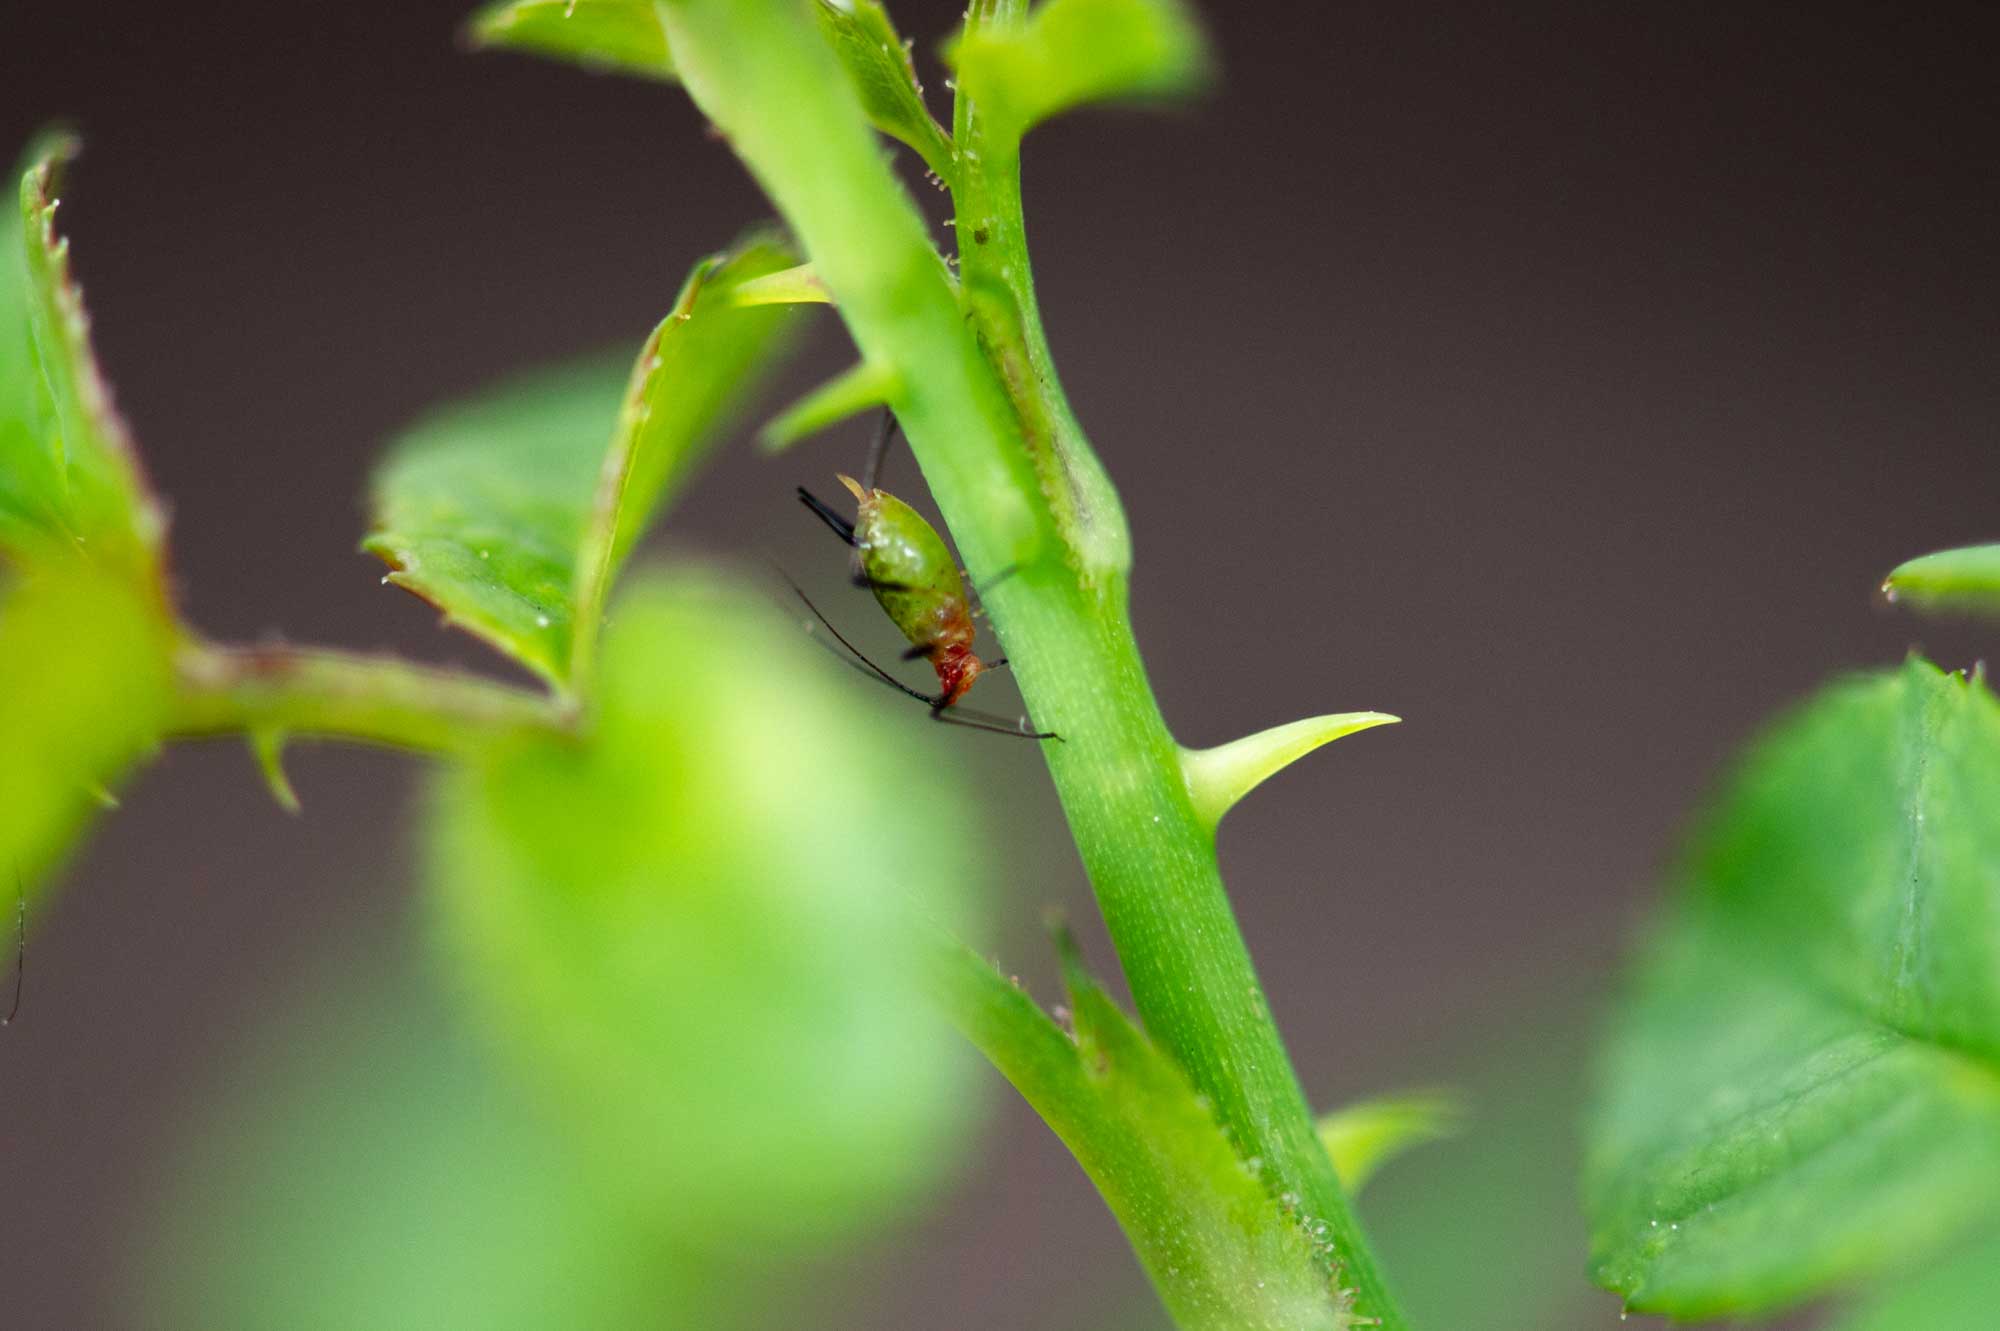 イバラヒゲナガアブラムシの特徴を写真で紹介 虫の写真と生態なら昆虫写真図鑑 ムシミル